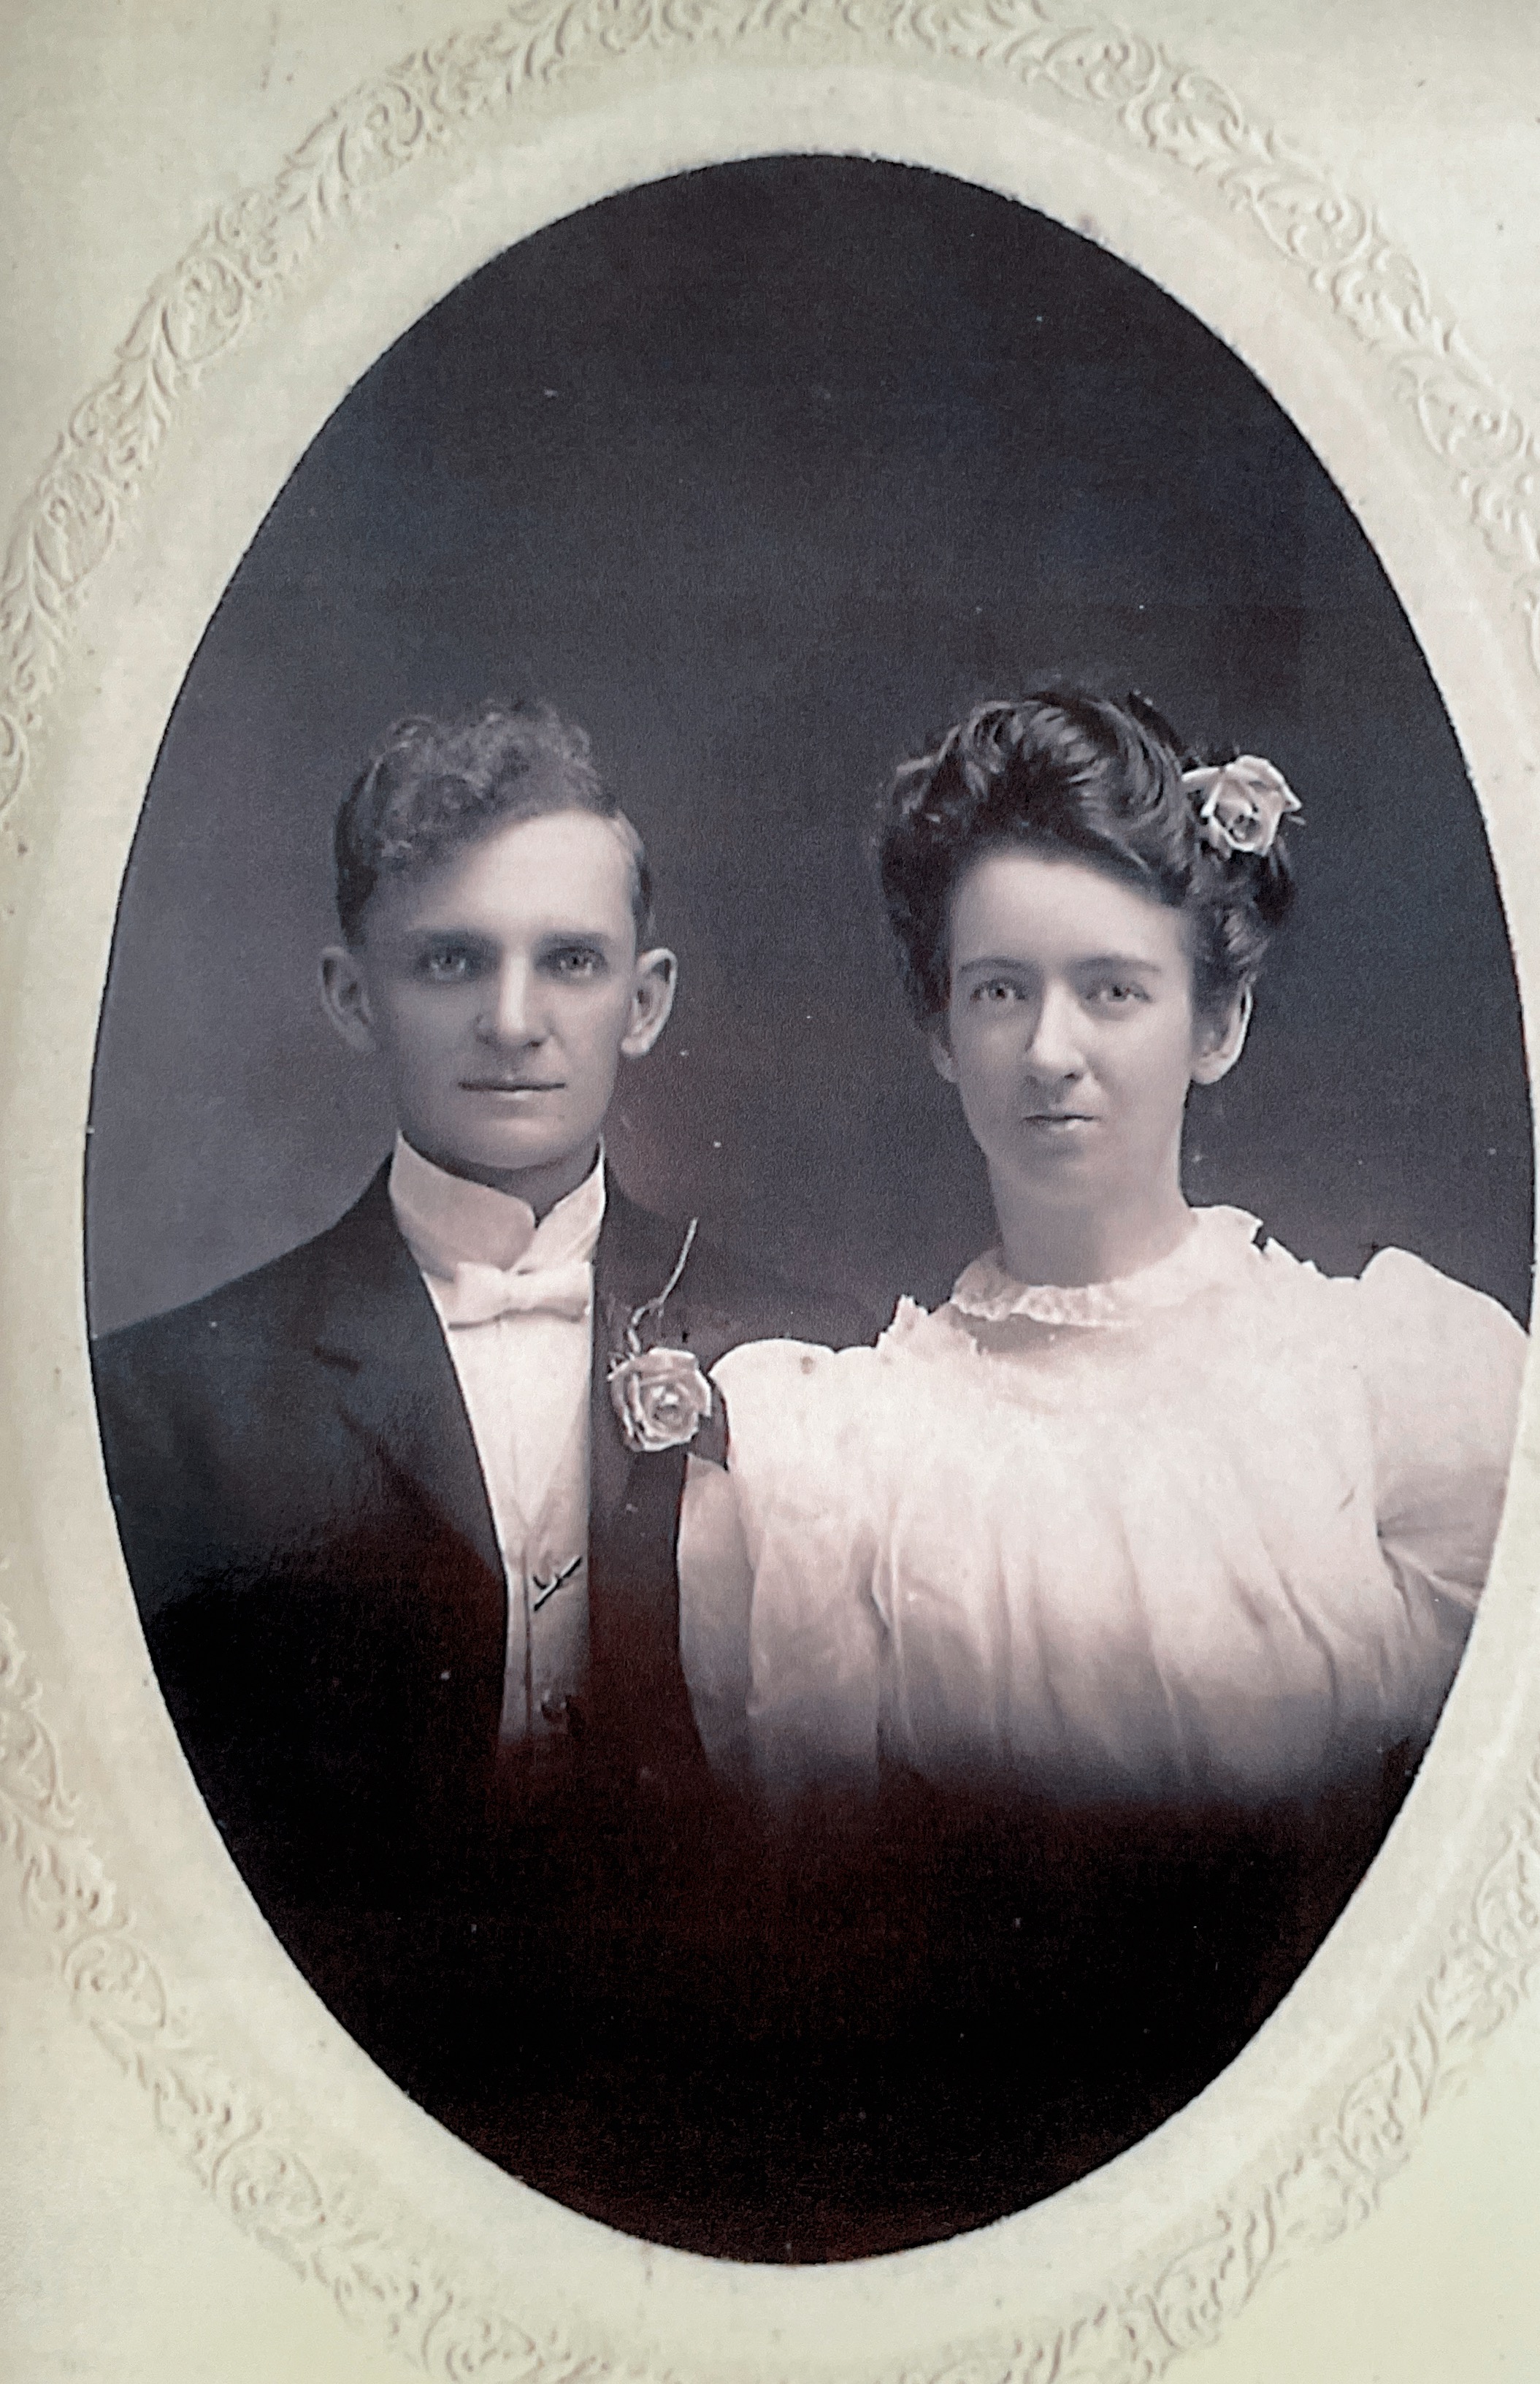 Wedding Photo Abram & Fannie Verplank  March 27, 1894